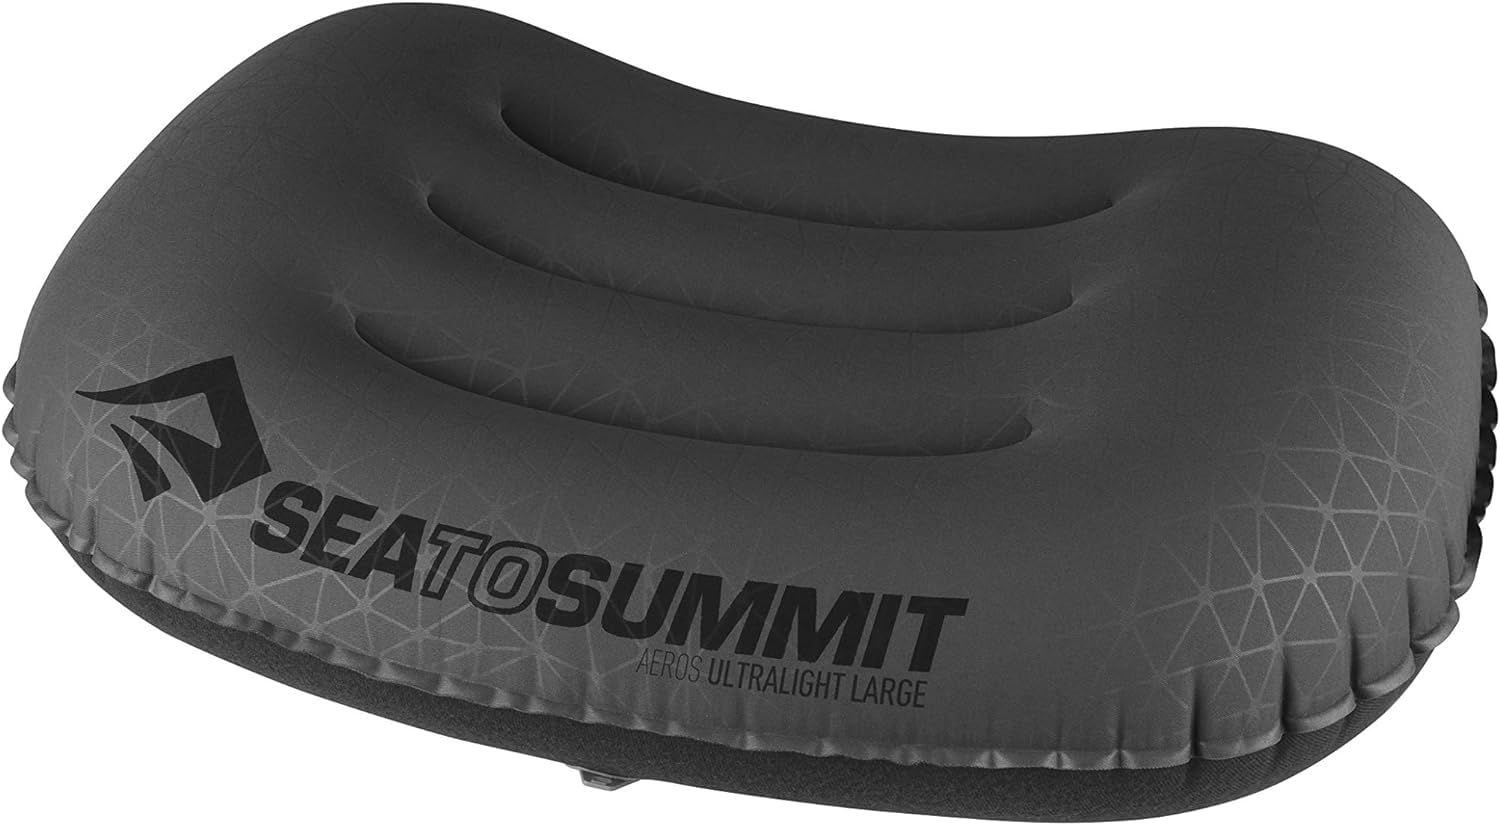 Sea to Summit - Aeros Ultralight Reisekissen L - Konturiert & leicht zum Aufblasen - Polyestergewebe 20D - rutschfest - Ultraleicht für Wanderungen - 44 x 32 x 14 cm - Grey - 70 g